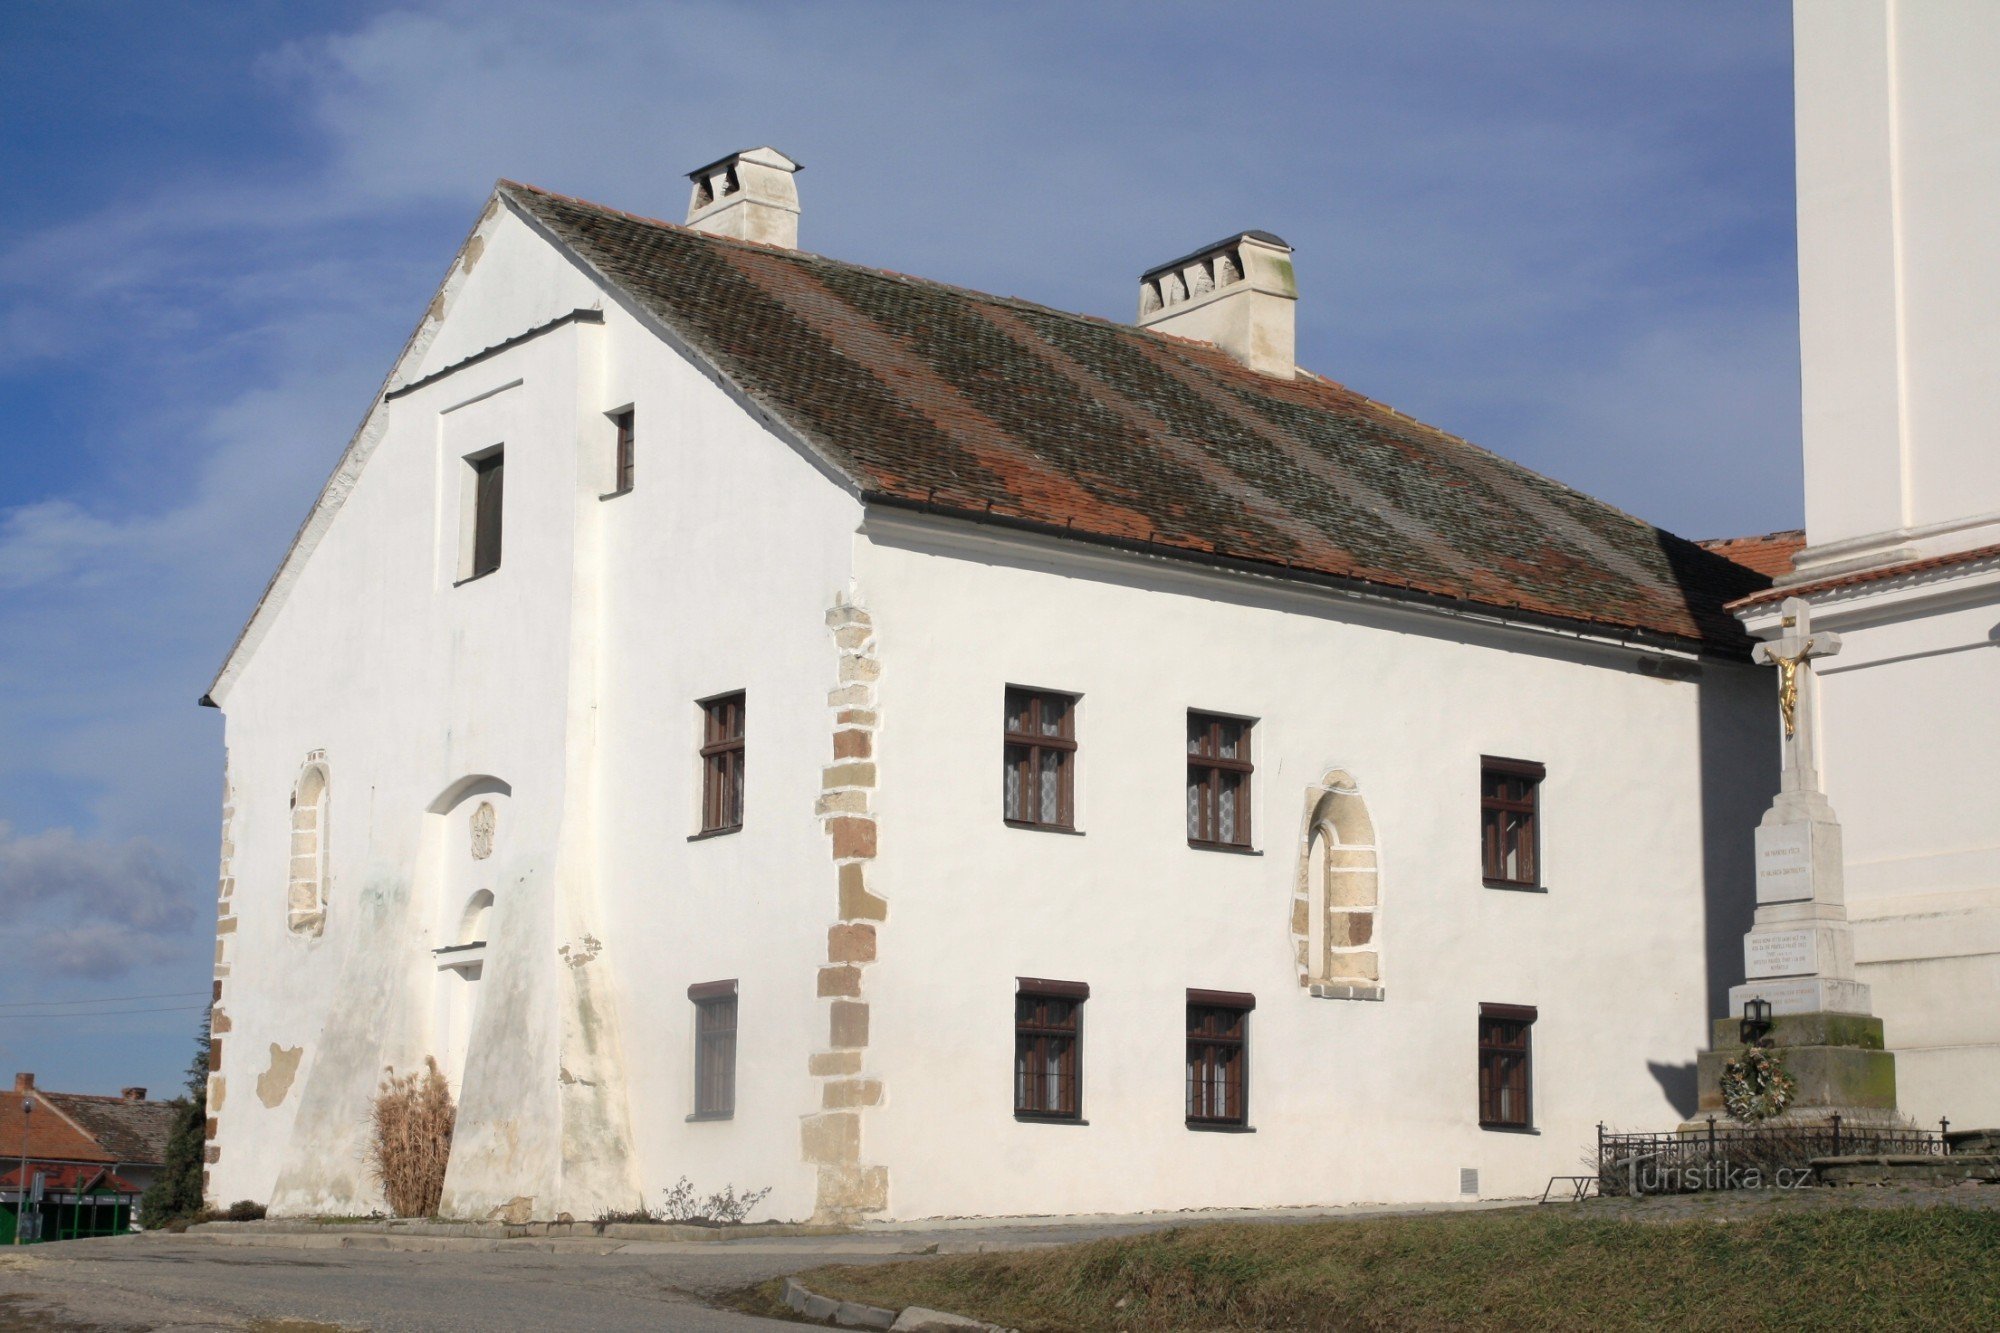 Дрнголец - пасторский дом